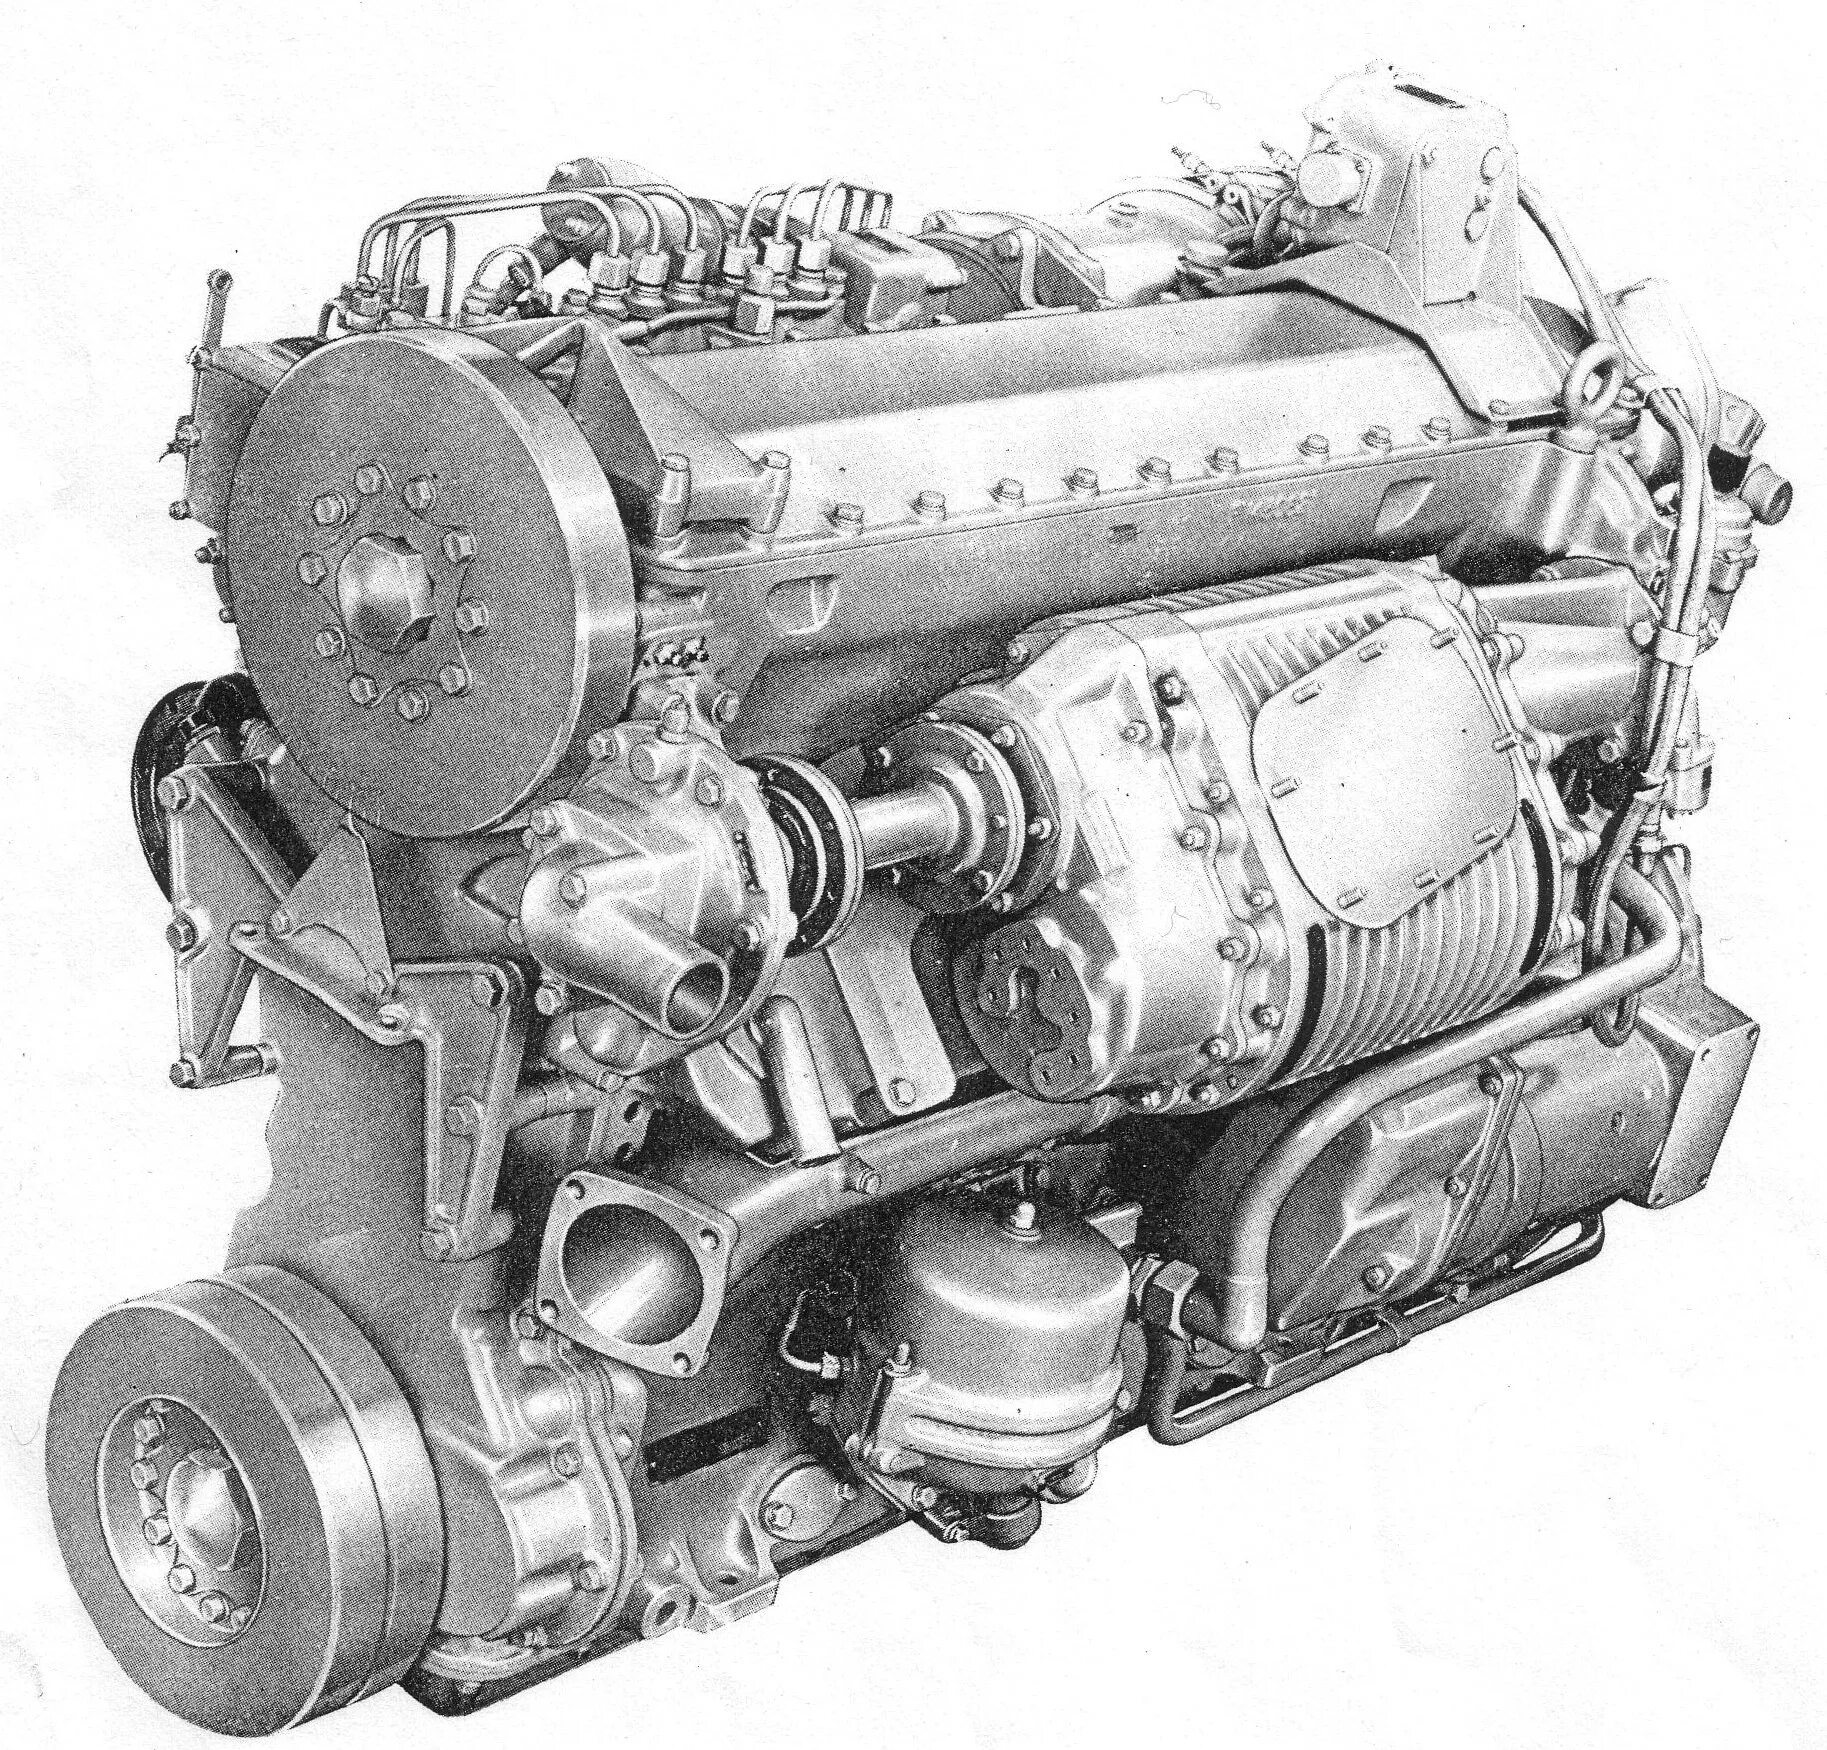 Leyland l60 engine. Rolls Royce k60 engine. Двухтактный дизельный двигатель МАЗ 200. Дизель Лейланд к-60.